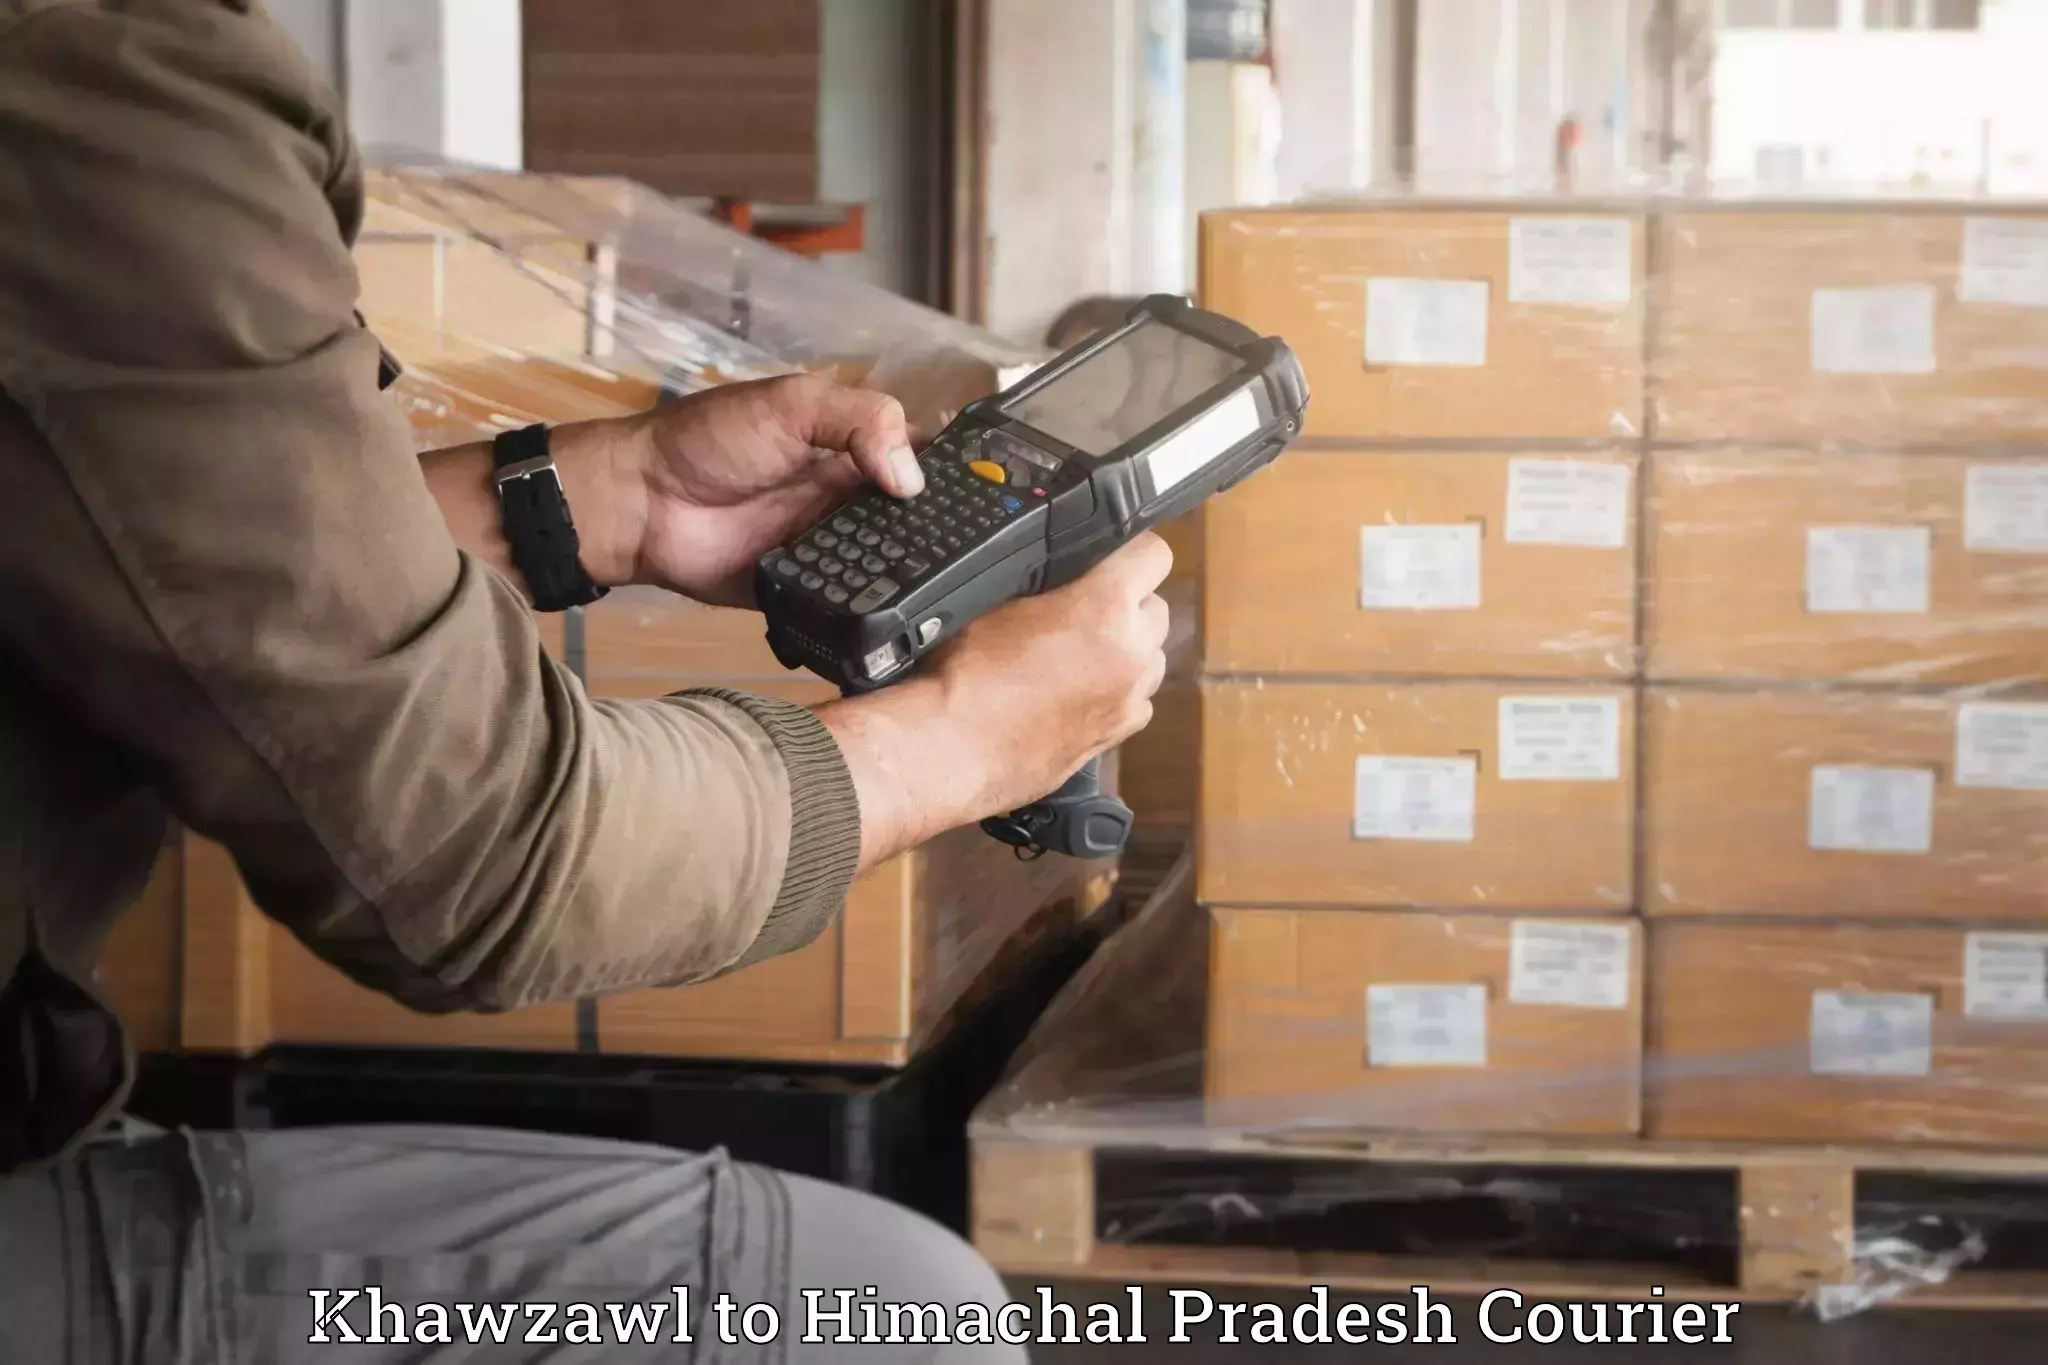 Dependable moving services Khawzawl to Khundian